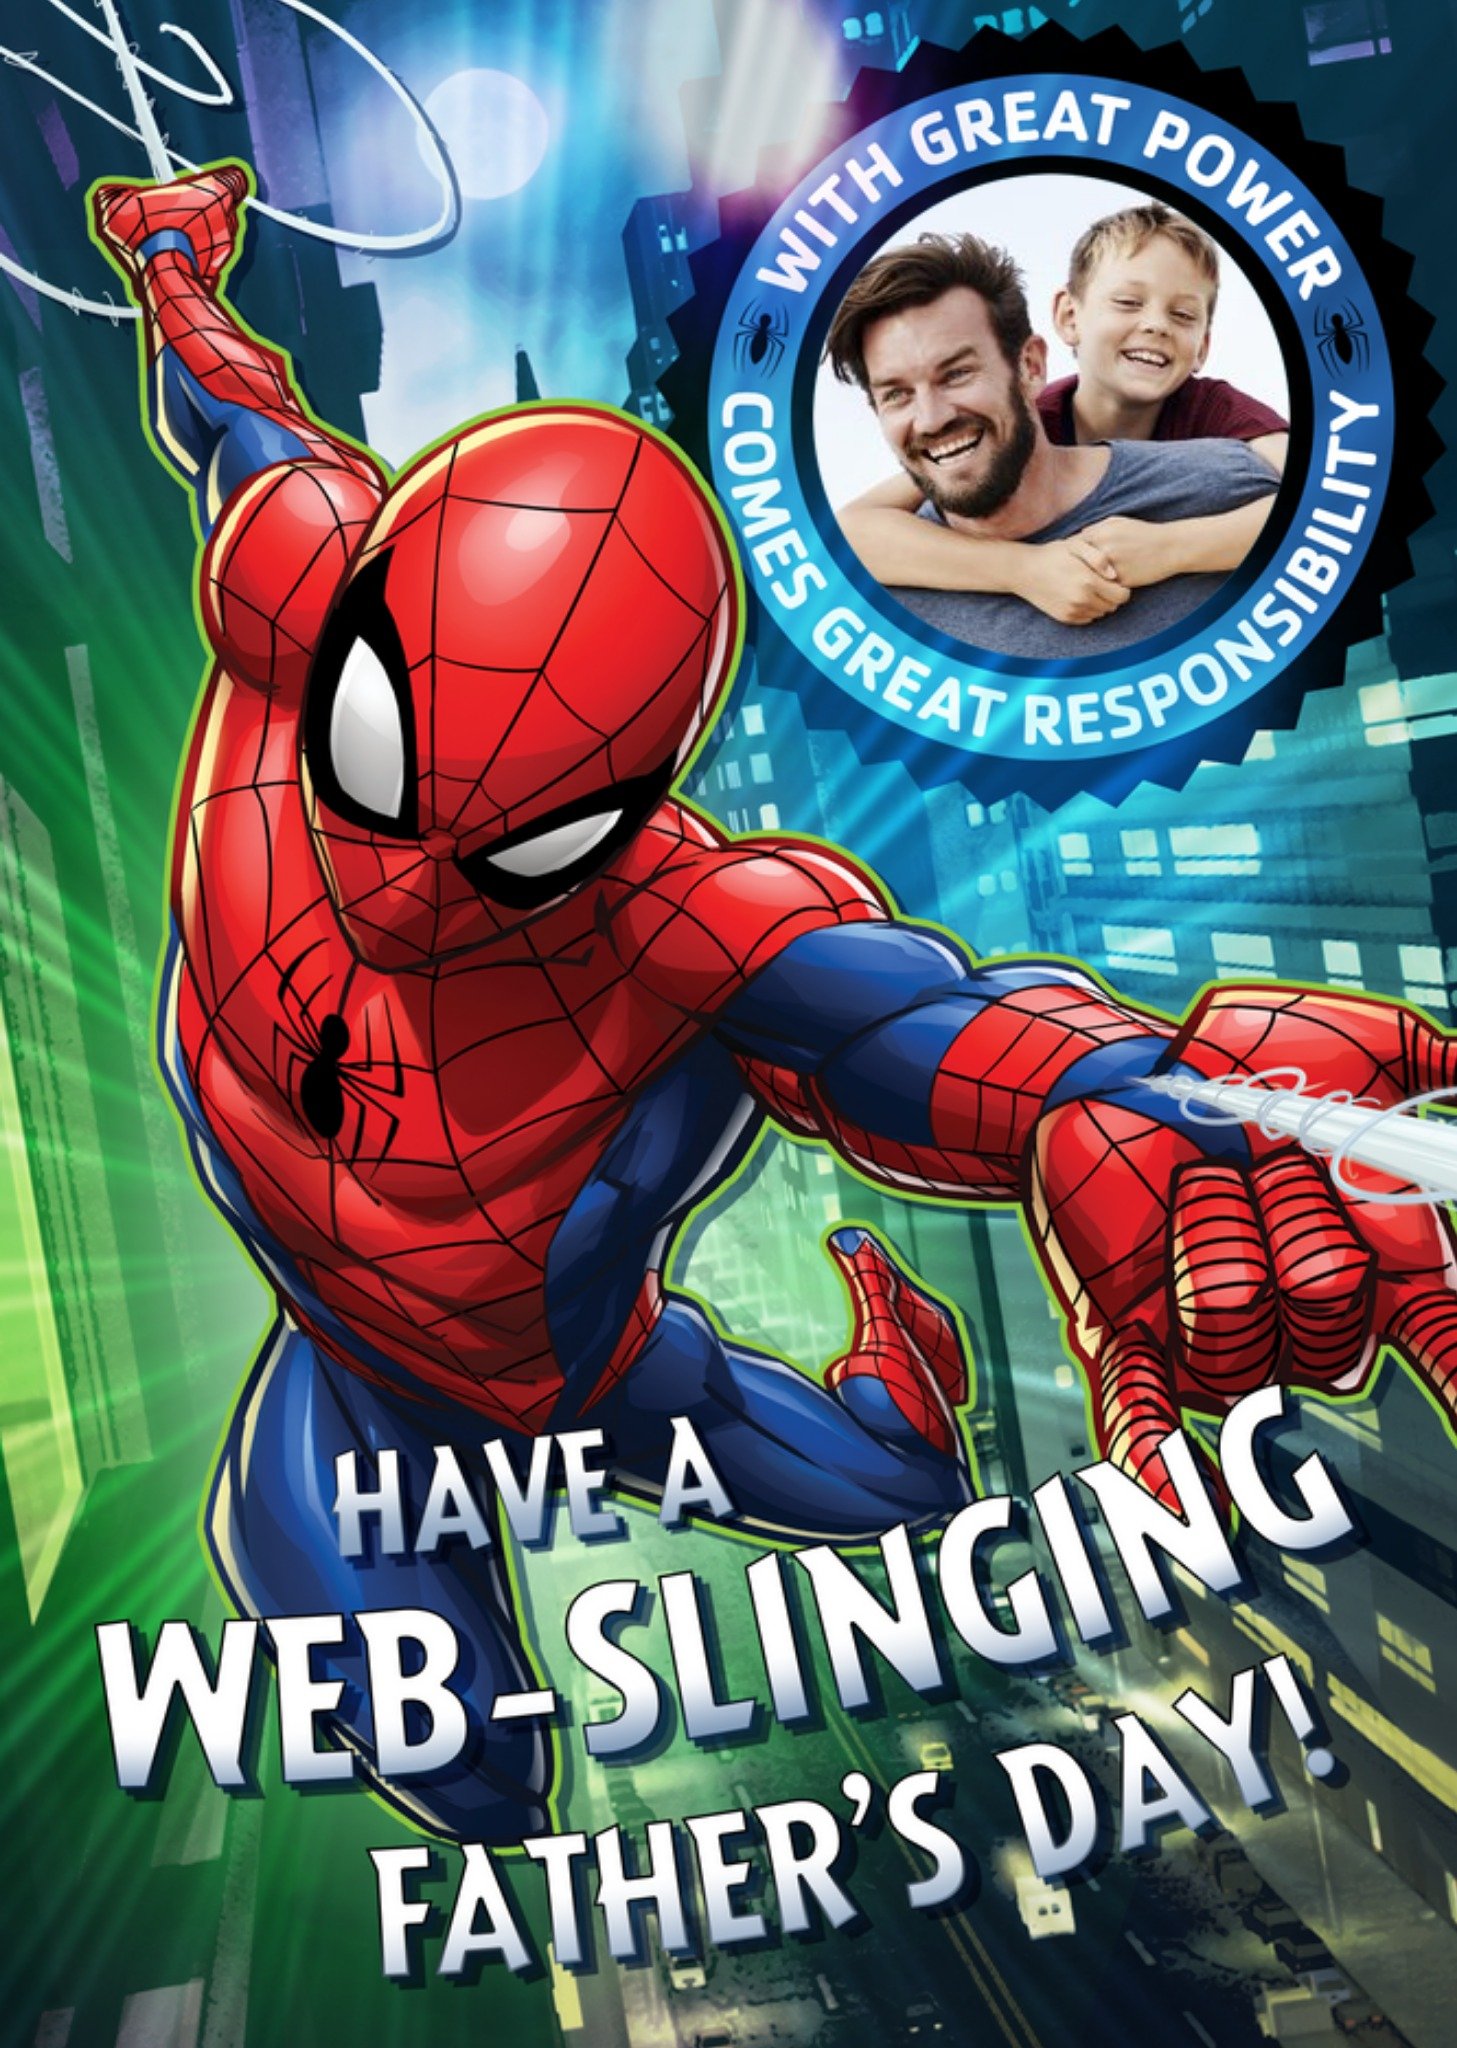 Marvel Spiderman Web-Slinging Photo Upload Fathers Day Card, Large